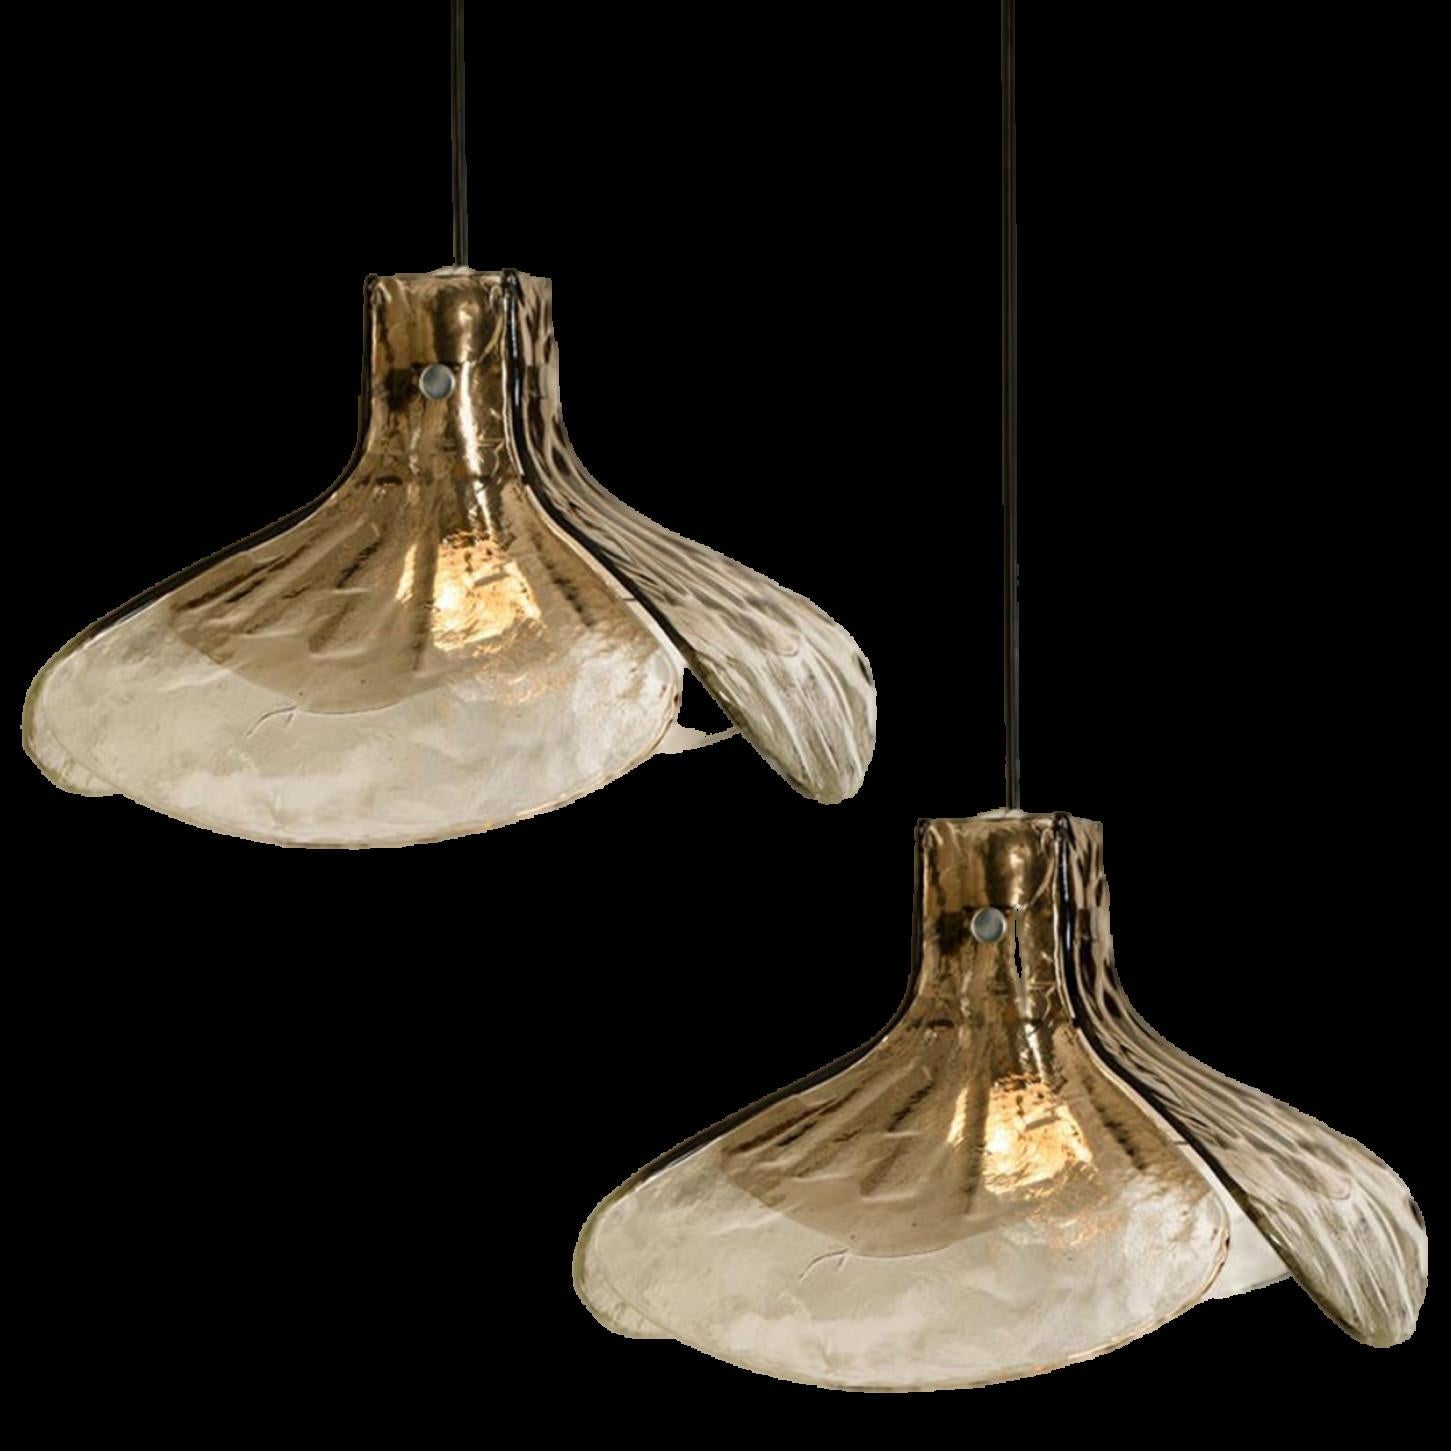 1 des 2 lampes suspendues, modèle LS185 par Carlo Nason pour Mazzega.
Quatre feuilles cristallines et fumées composent cette belle pièce artisanale en verre épais de Murano.

Mesures : H 16.93